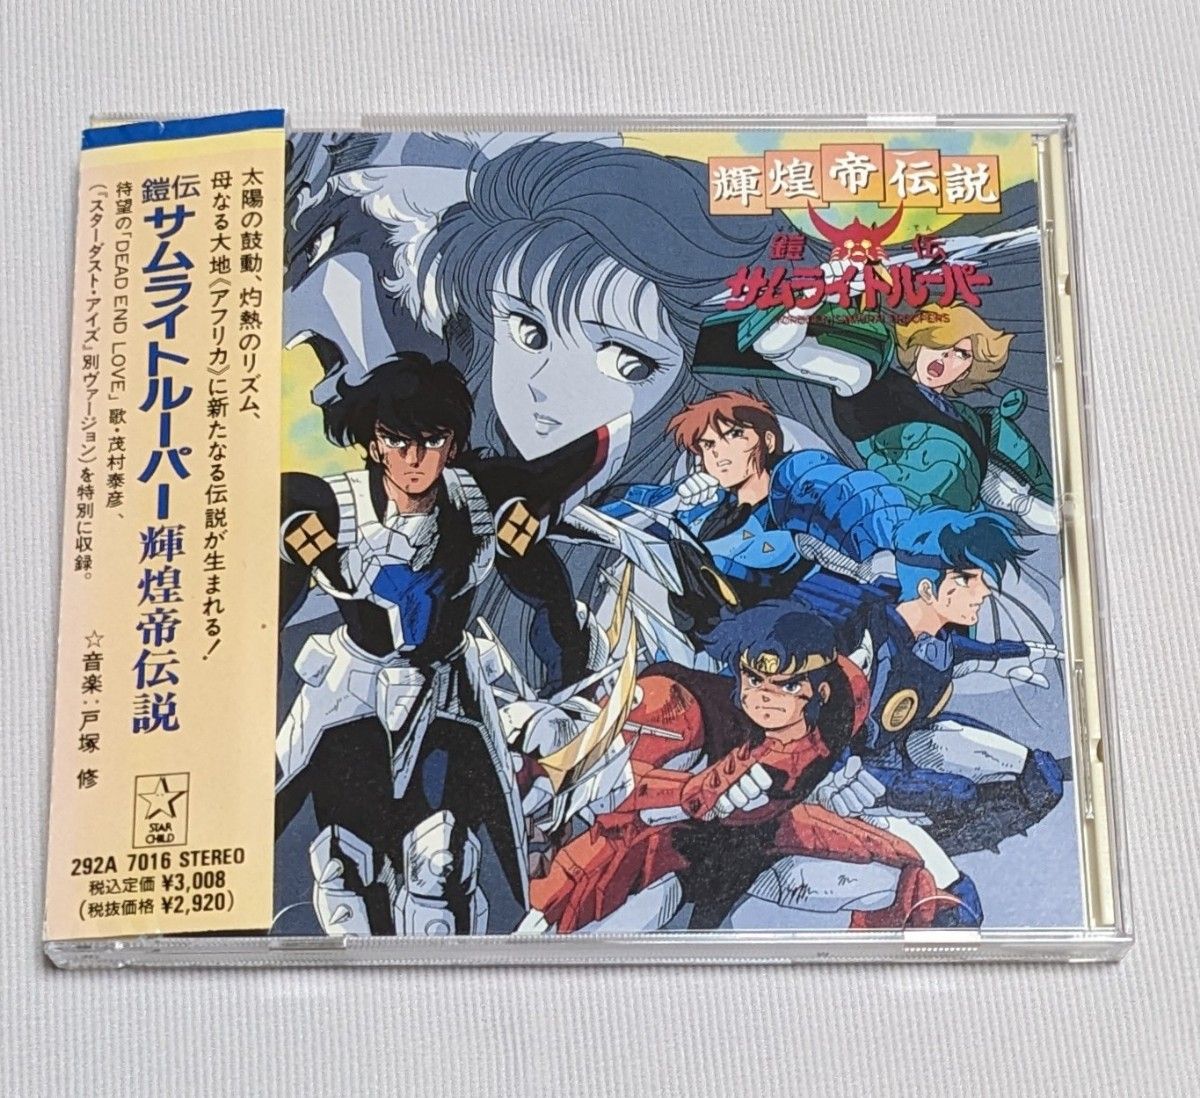 鎧伝サムライトルーパー 輝煌帝伝説 オリジナル サウンドトラック CD 帯付